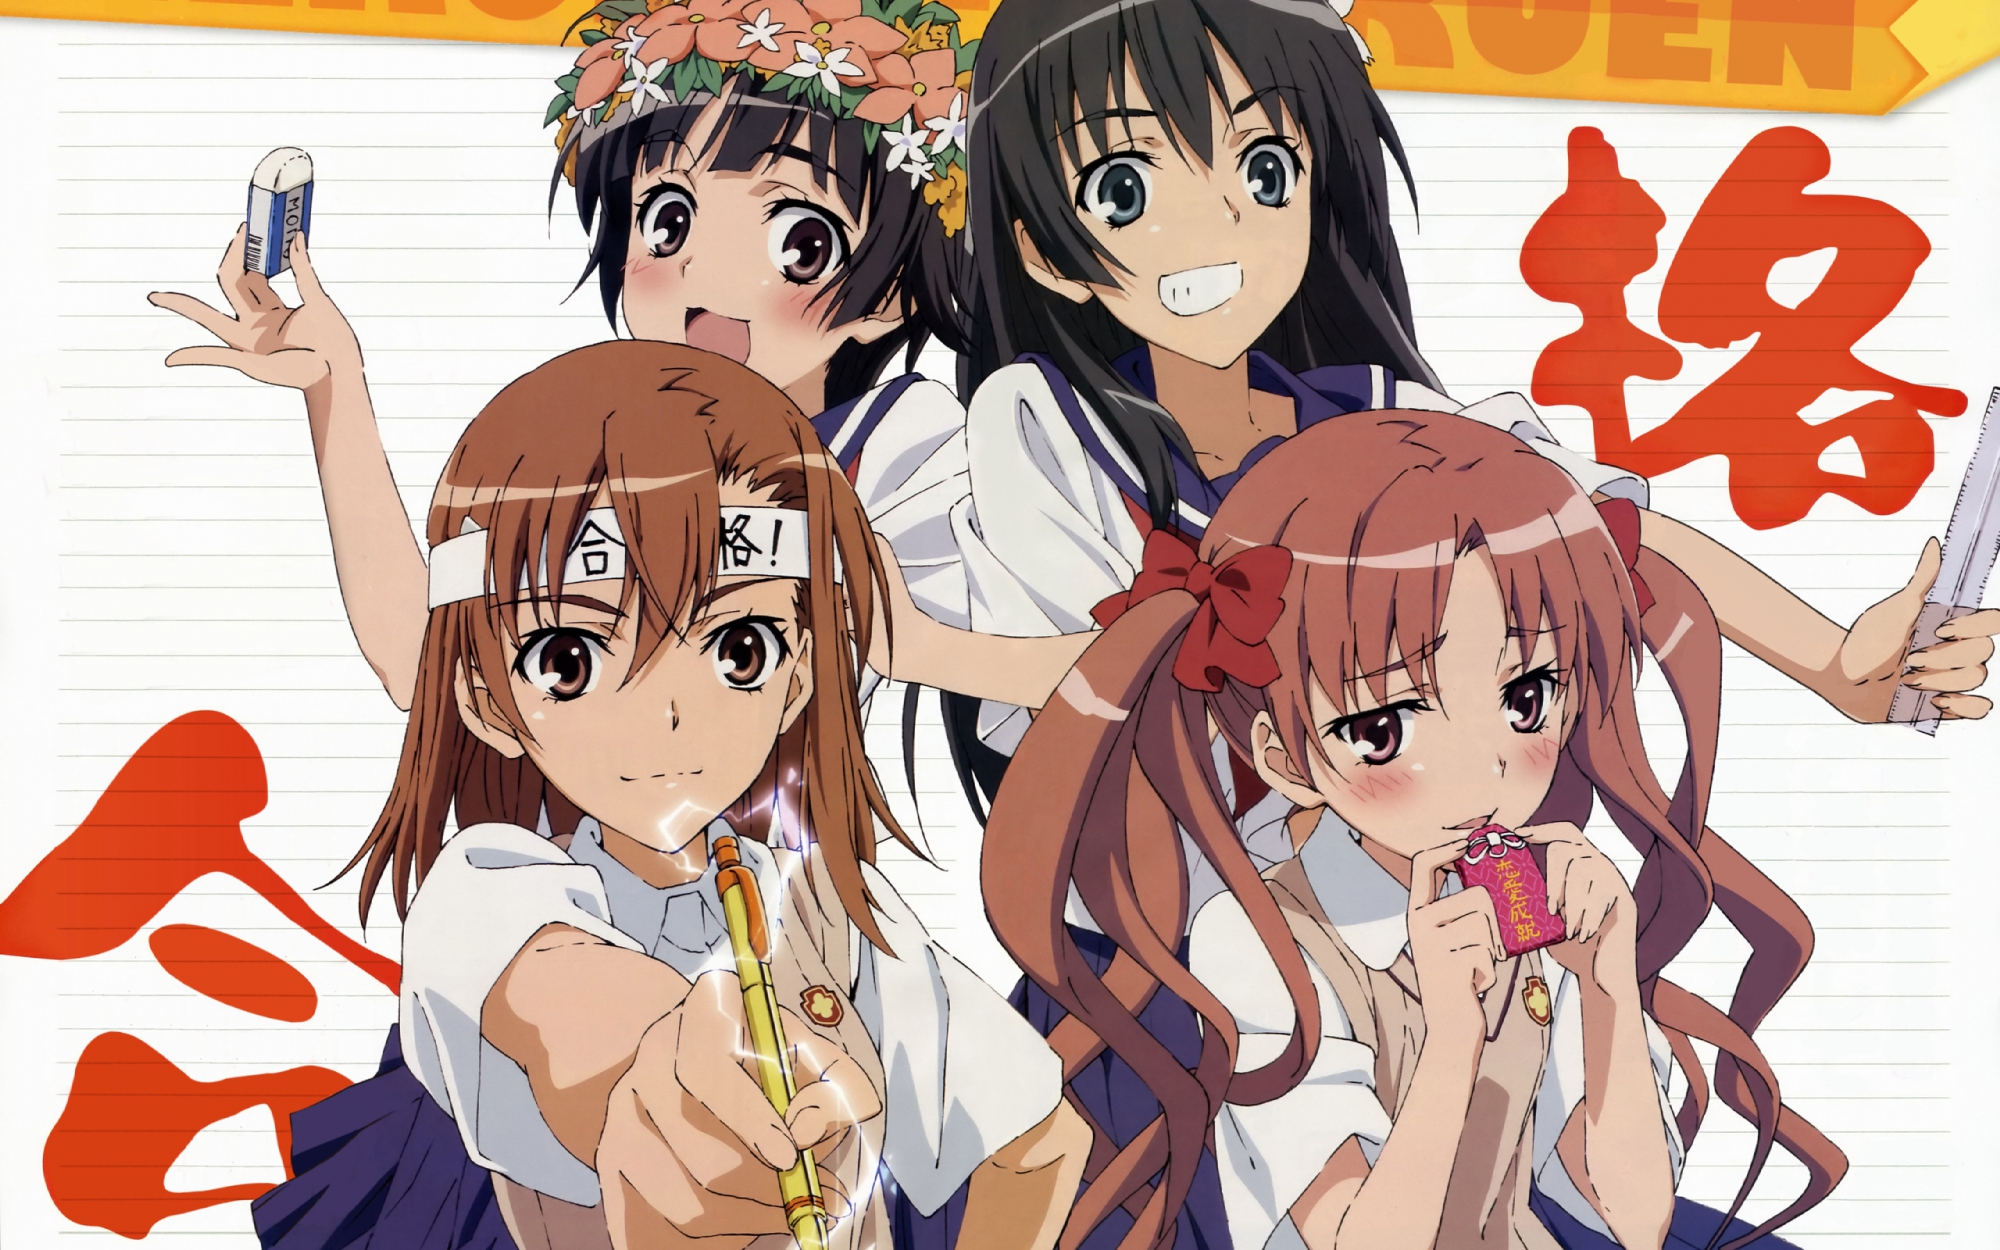 school uniforms, Misaka Mikoto, Toaru Kagaku no Railgun, Uiharu Kazari, Shirai Kuroko, Saten Ruiko - desktop wallpaper